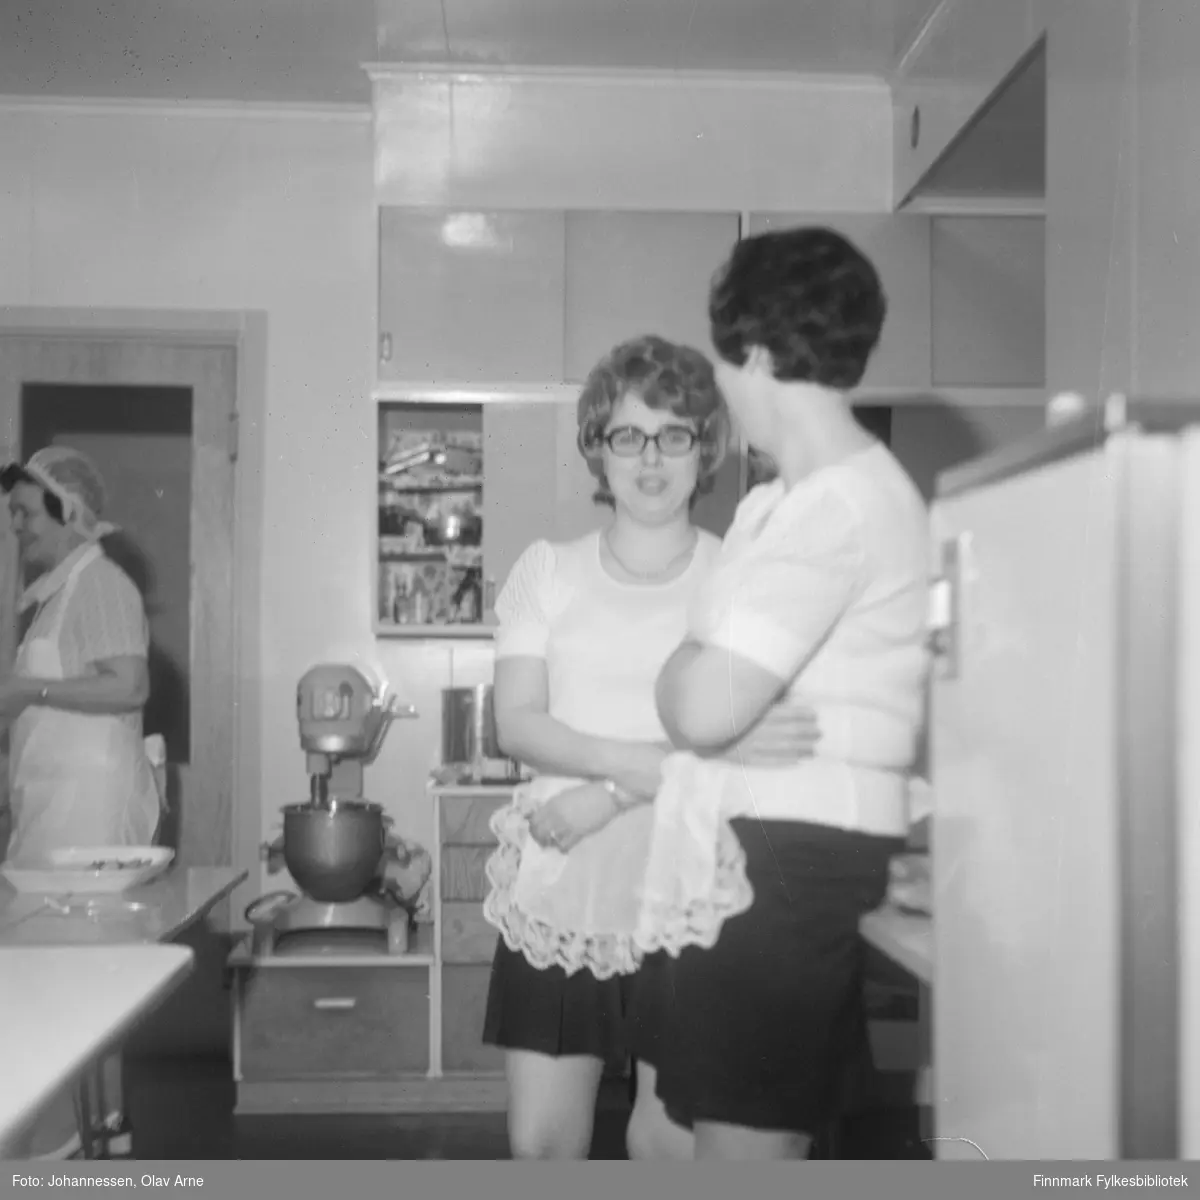 To serveringsdamer og en kokke i bakgrunnen. Alle ukjente 

Foto trolig tatt på tidlig 1970-tallet
